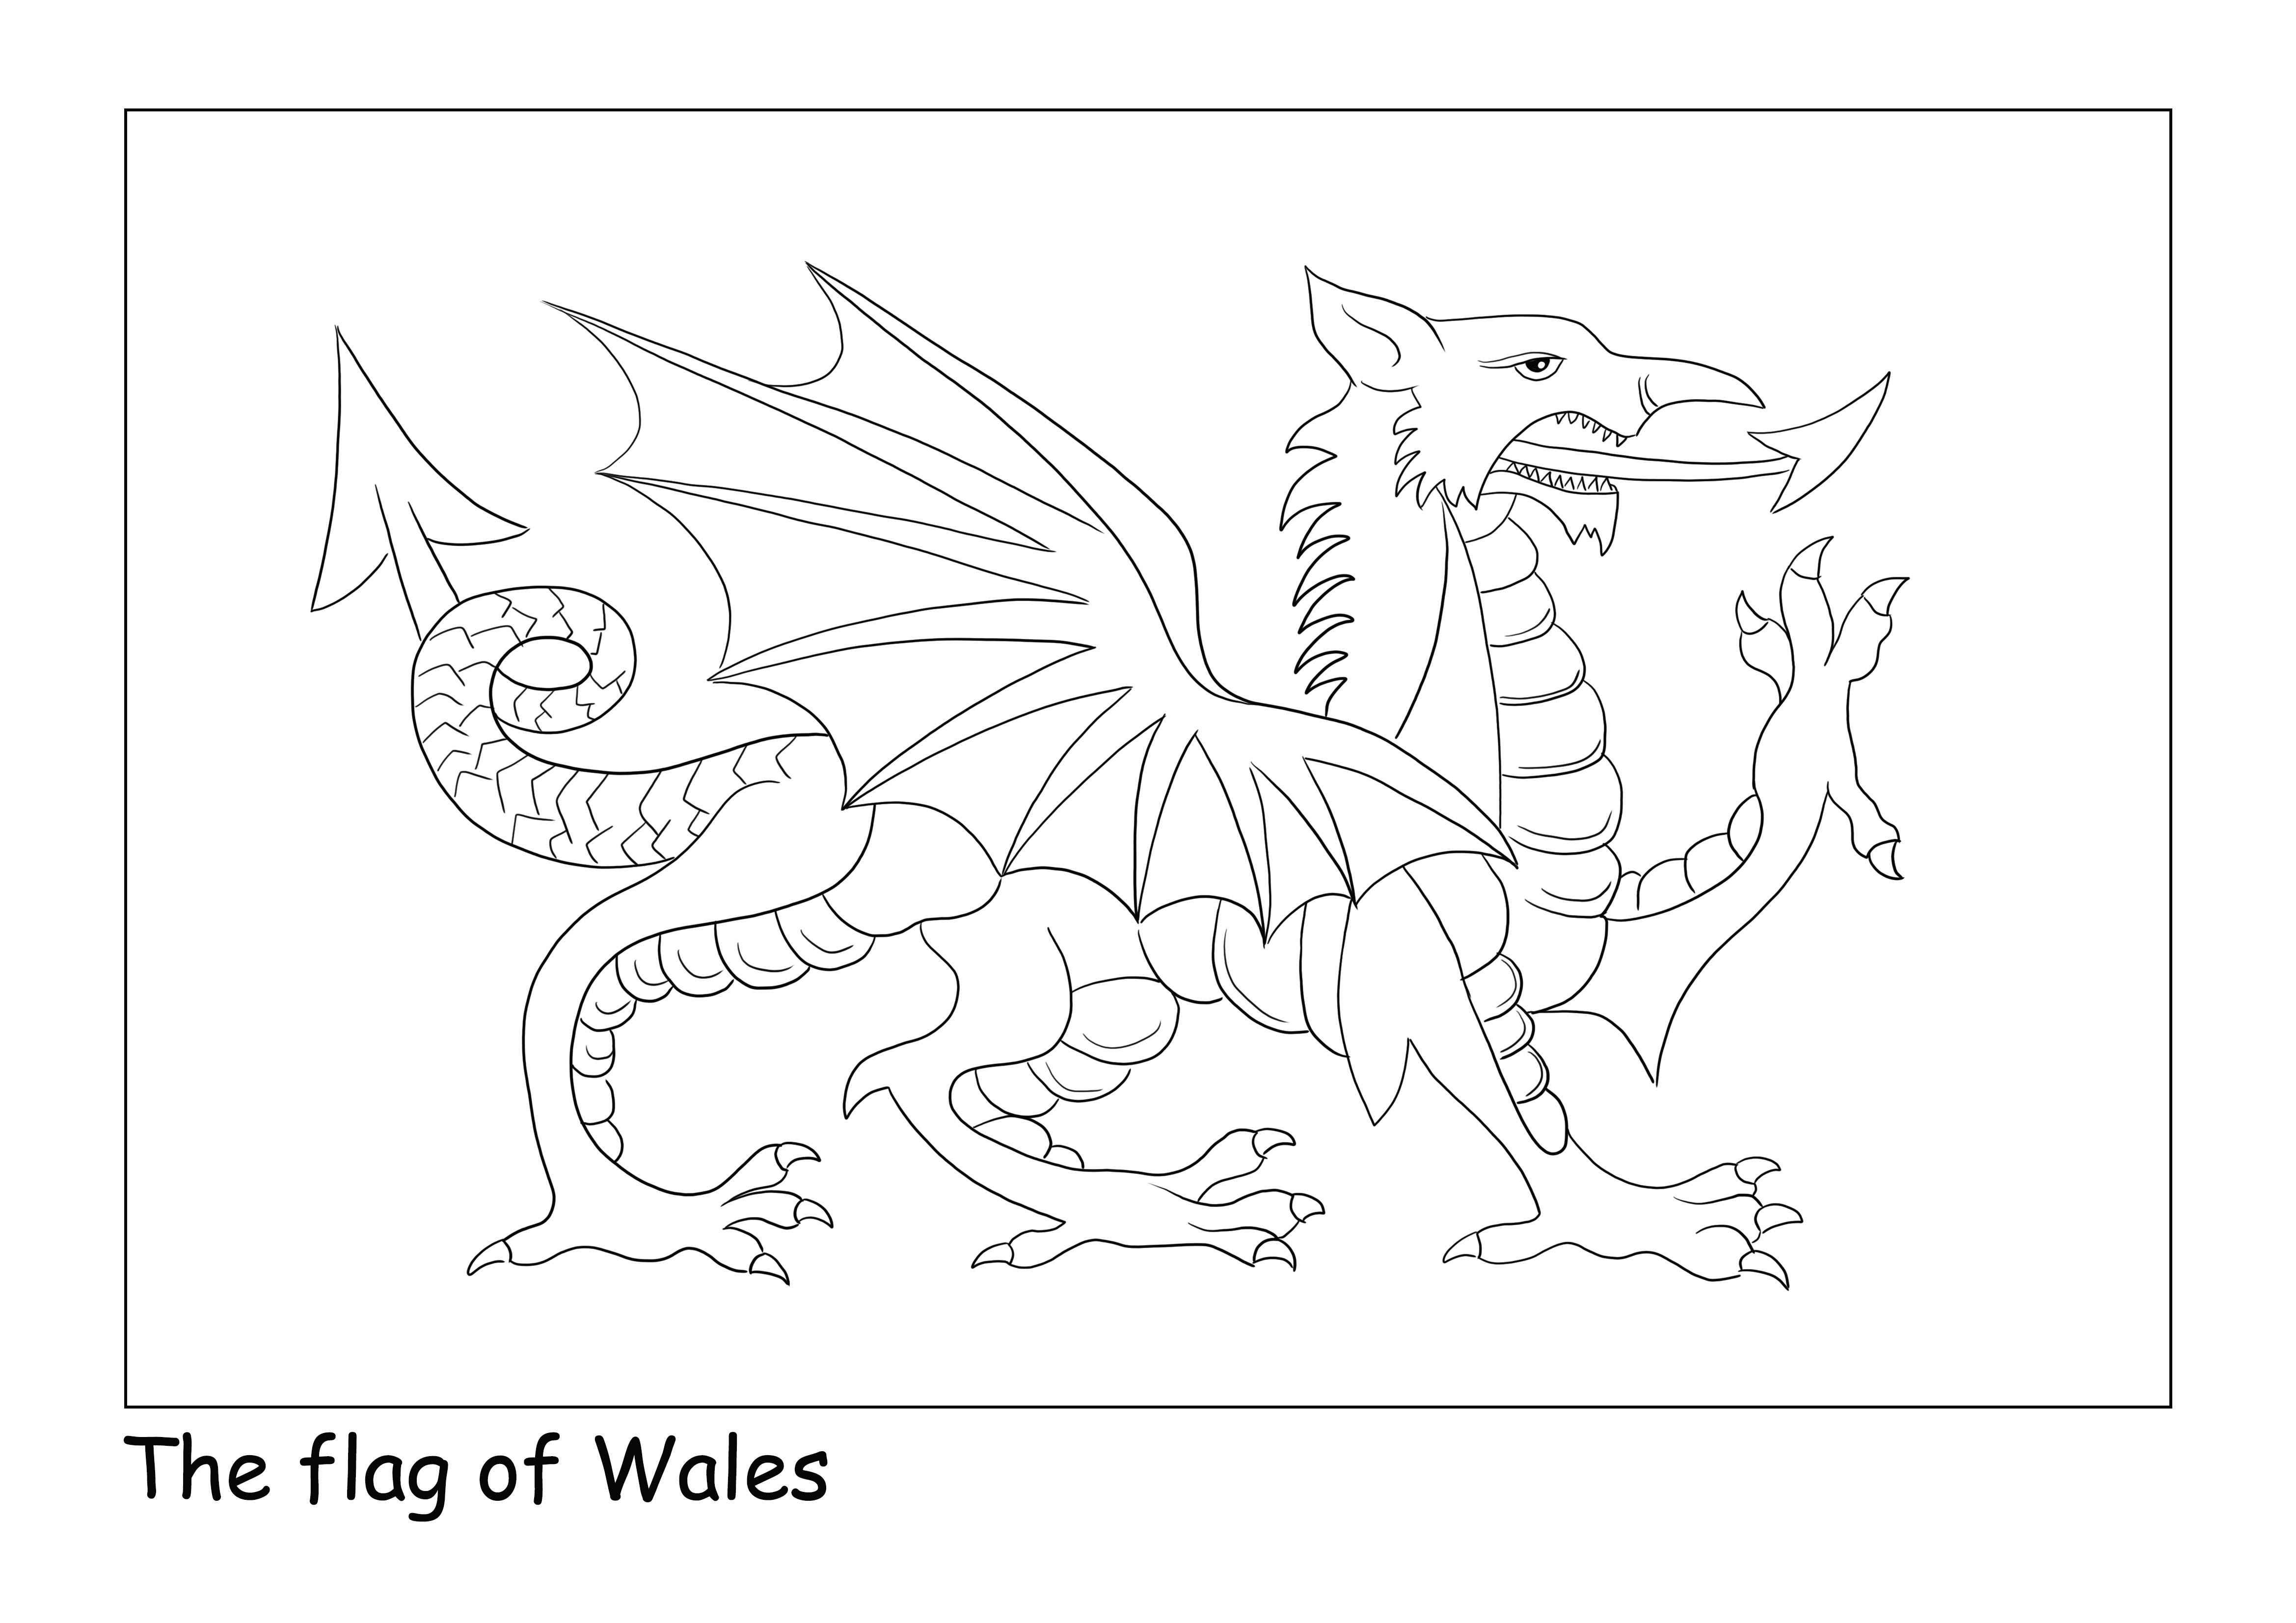 Flaga Walii na zwykłej stronie do łatwego kolorowania i pobierania arkusza